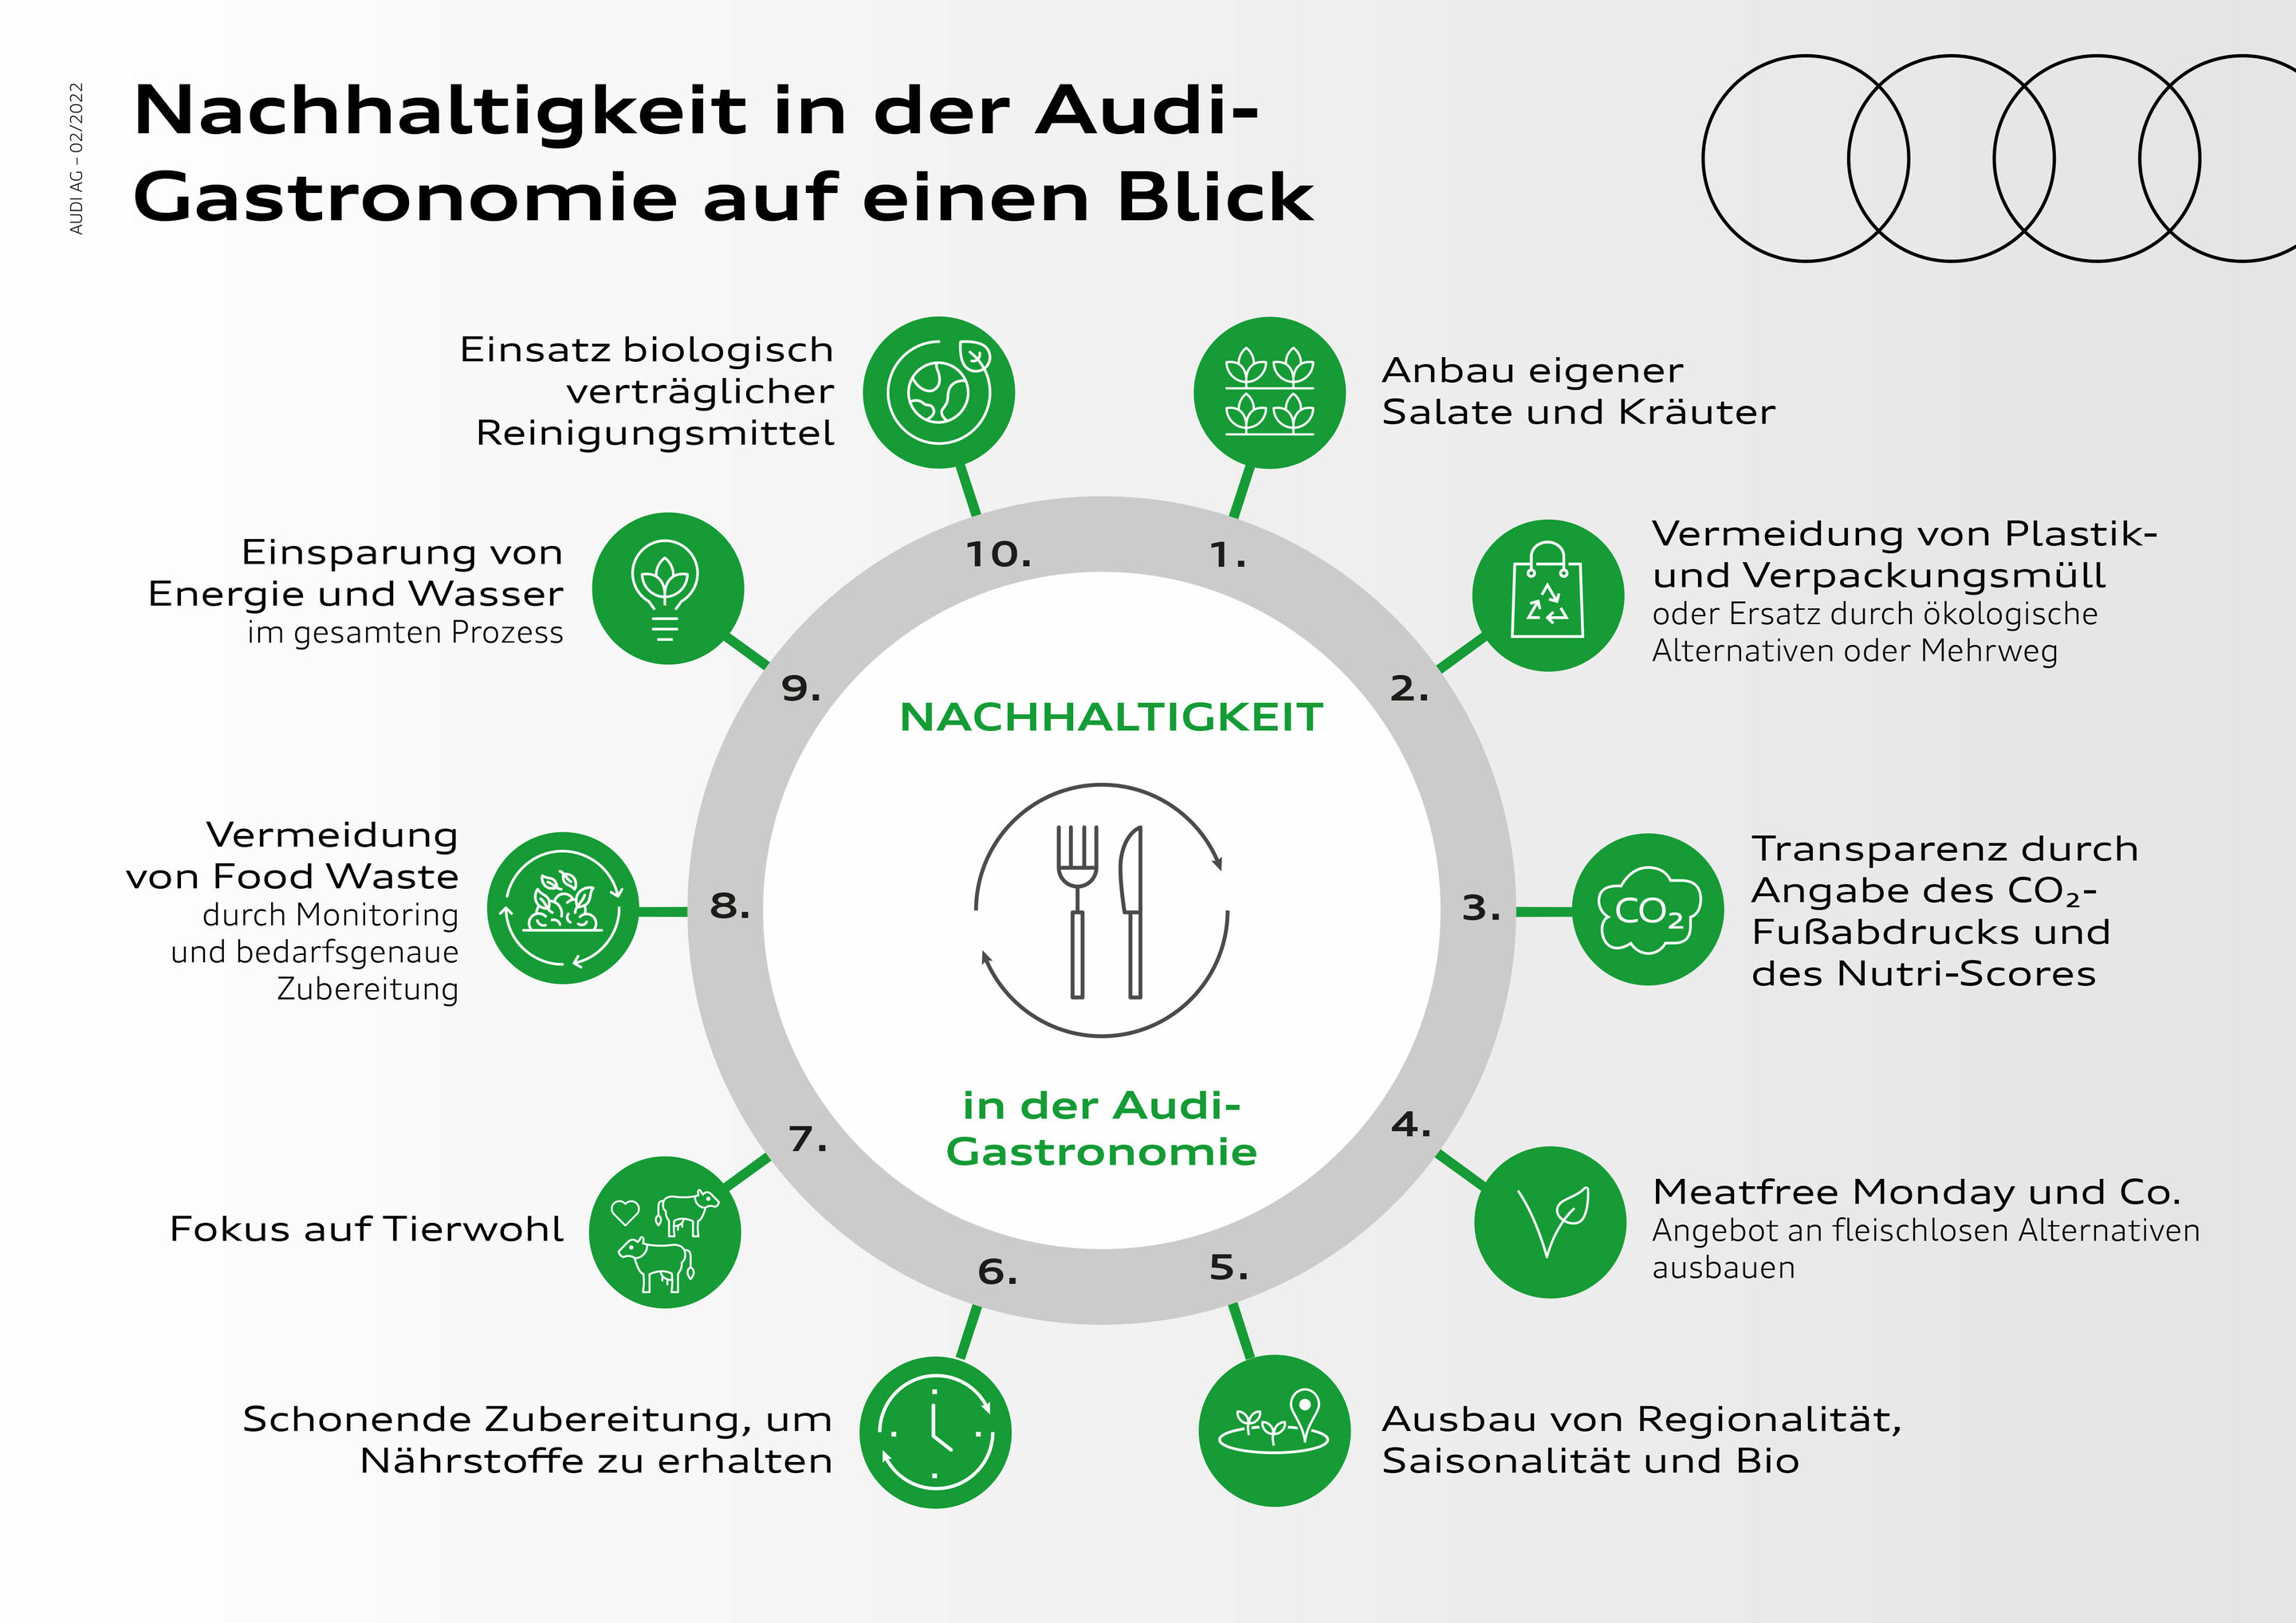 Nachhaltigkeit in der Audi-Gastronomie: „Wir wollen eine gute Wahl einfach machen“